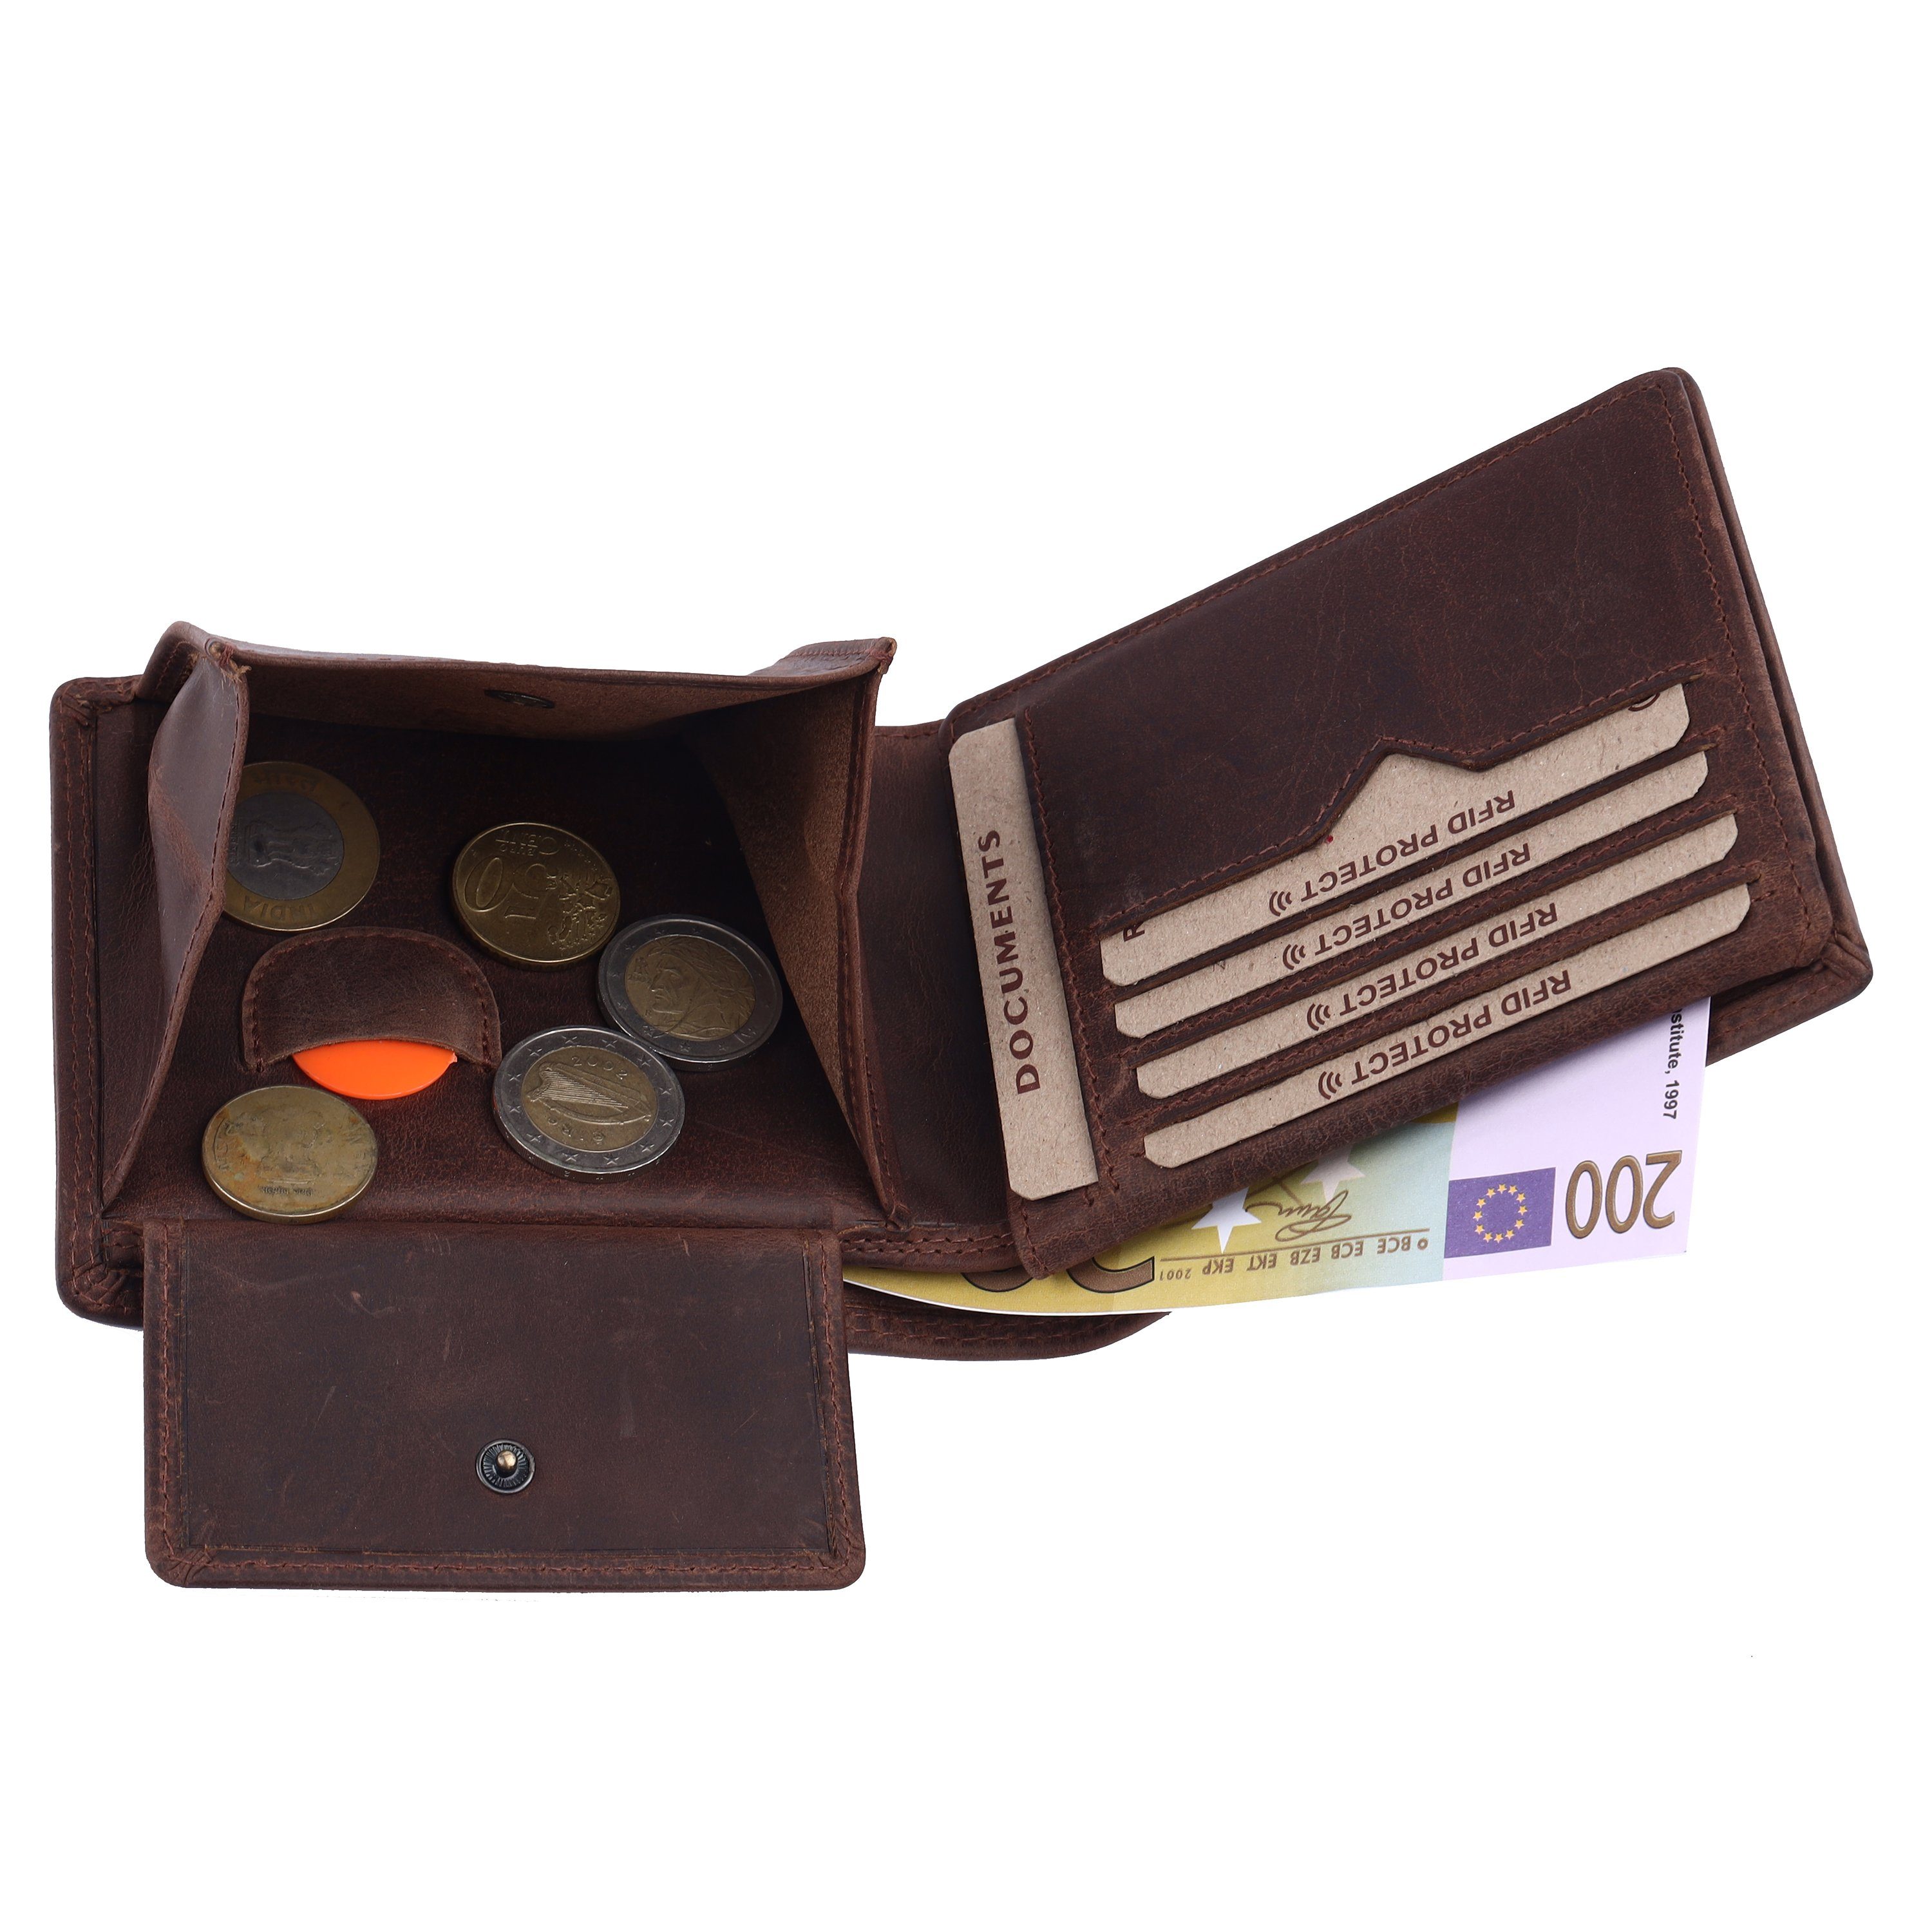 braune für Geschenkbox mit Vintage Leder aus & Mercano RFID-Schutz Herren, inkl. Doppelnaht, Geldbörse 100%